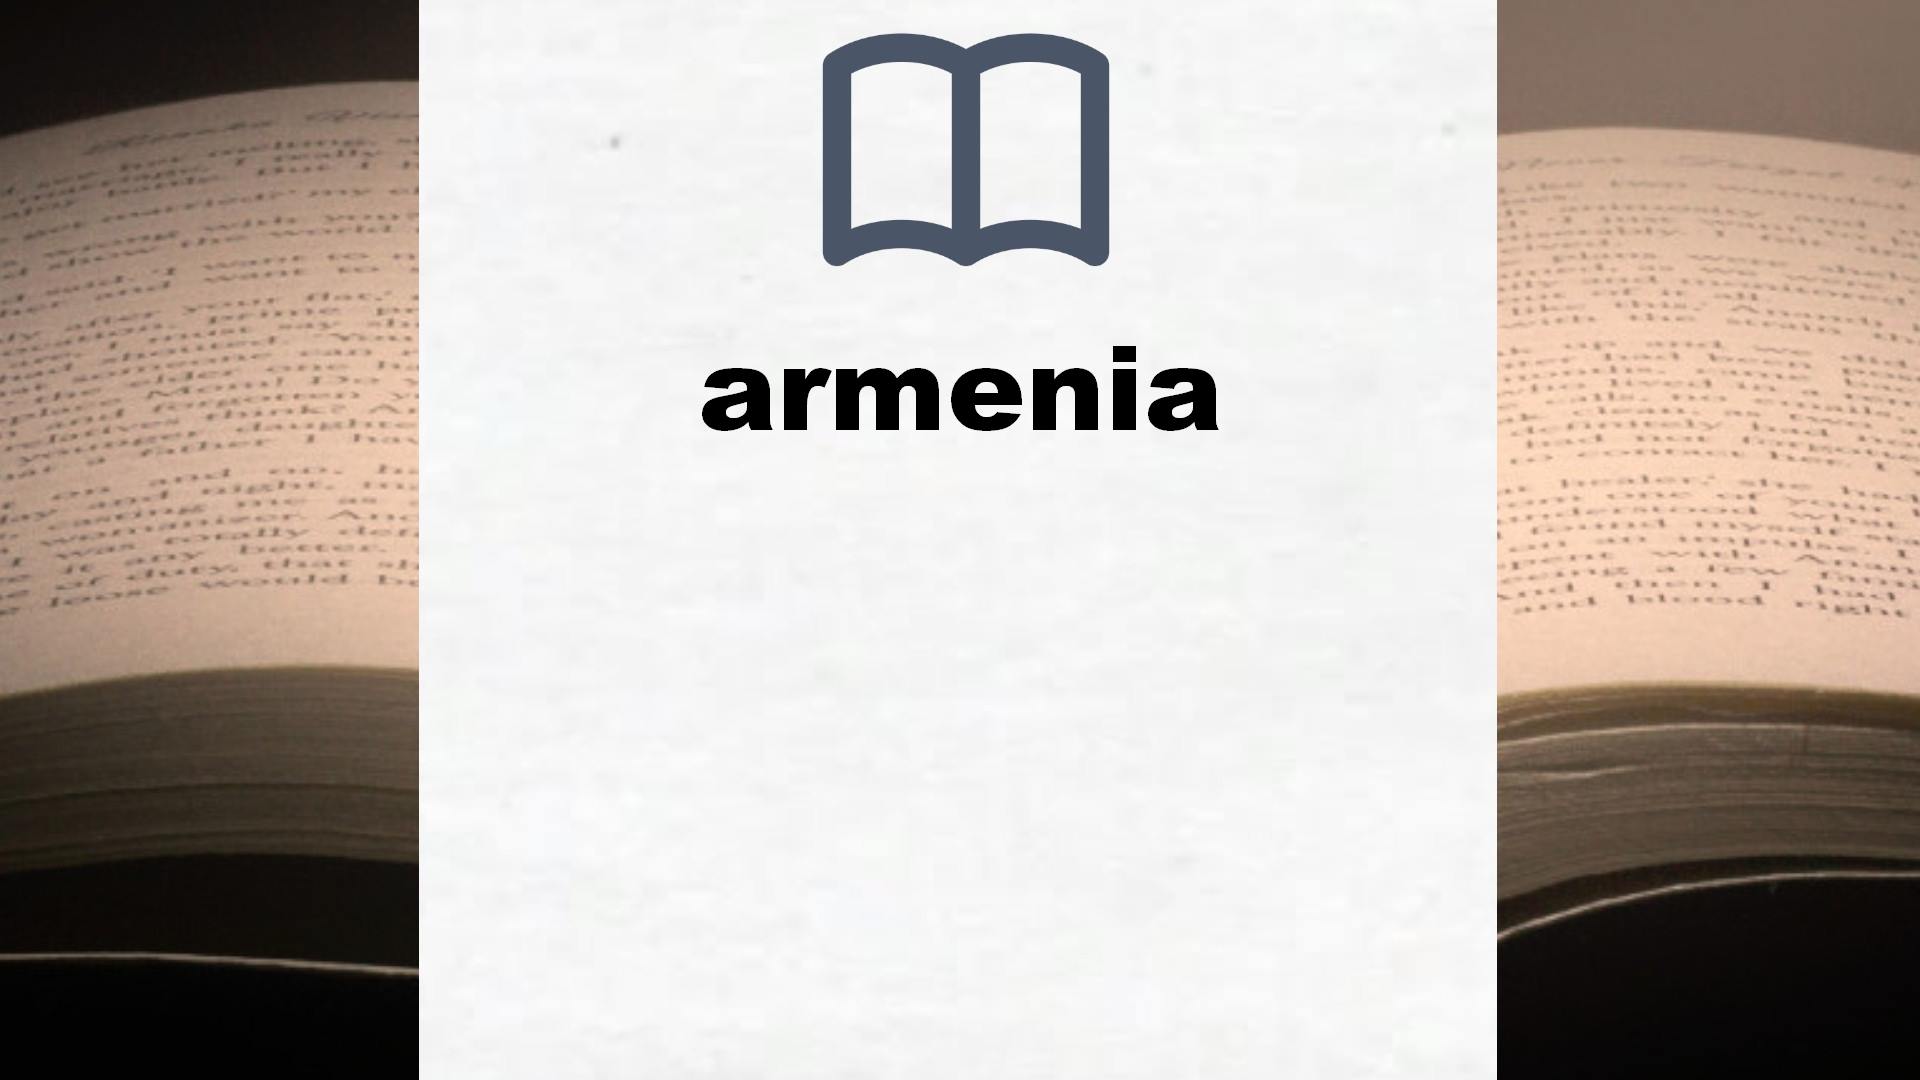 Libros sobre armenia